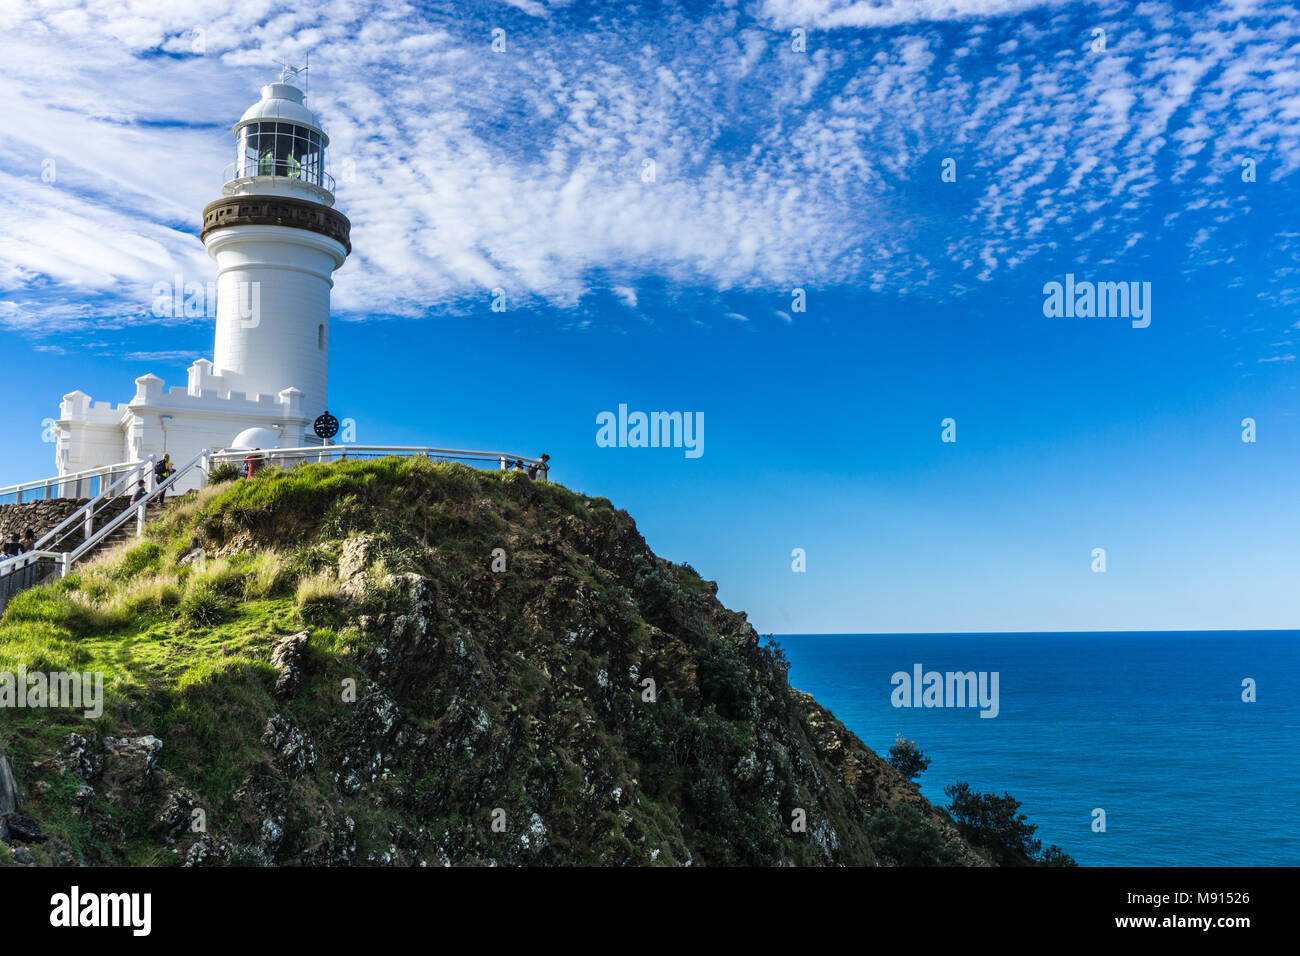 Leuchtturm Von Byron Bay Mit Blauer Himmel New South Wales Australien Stockfotografie Alamy